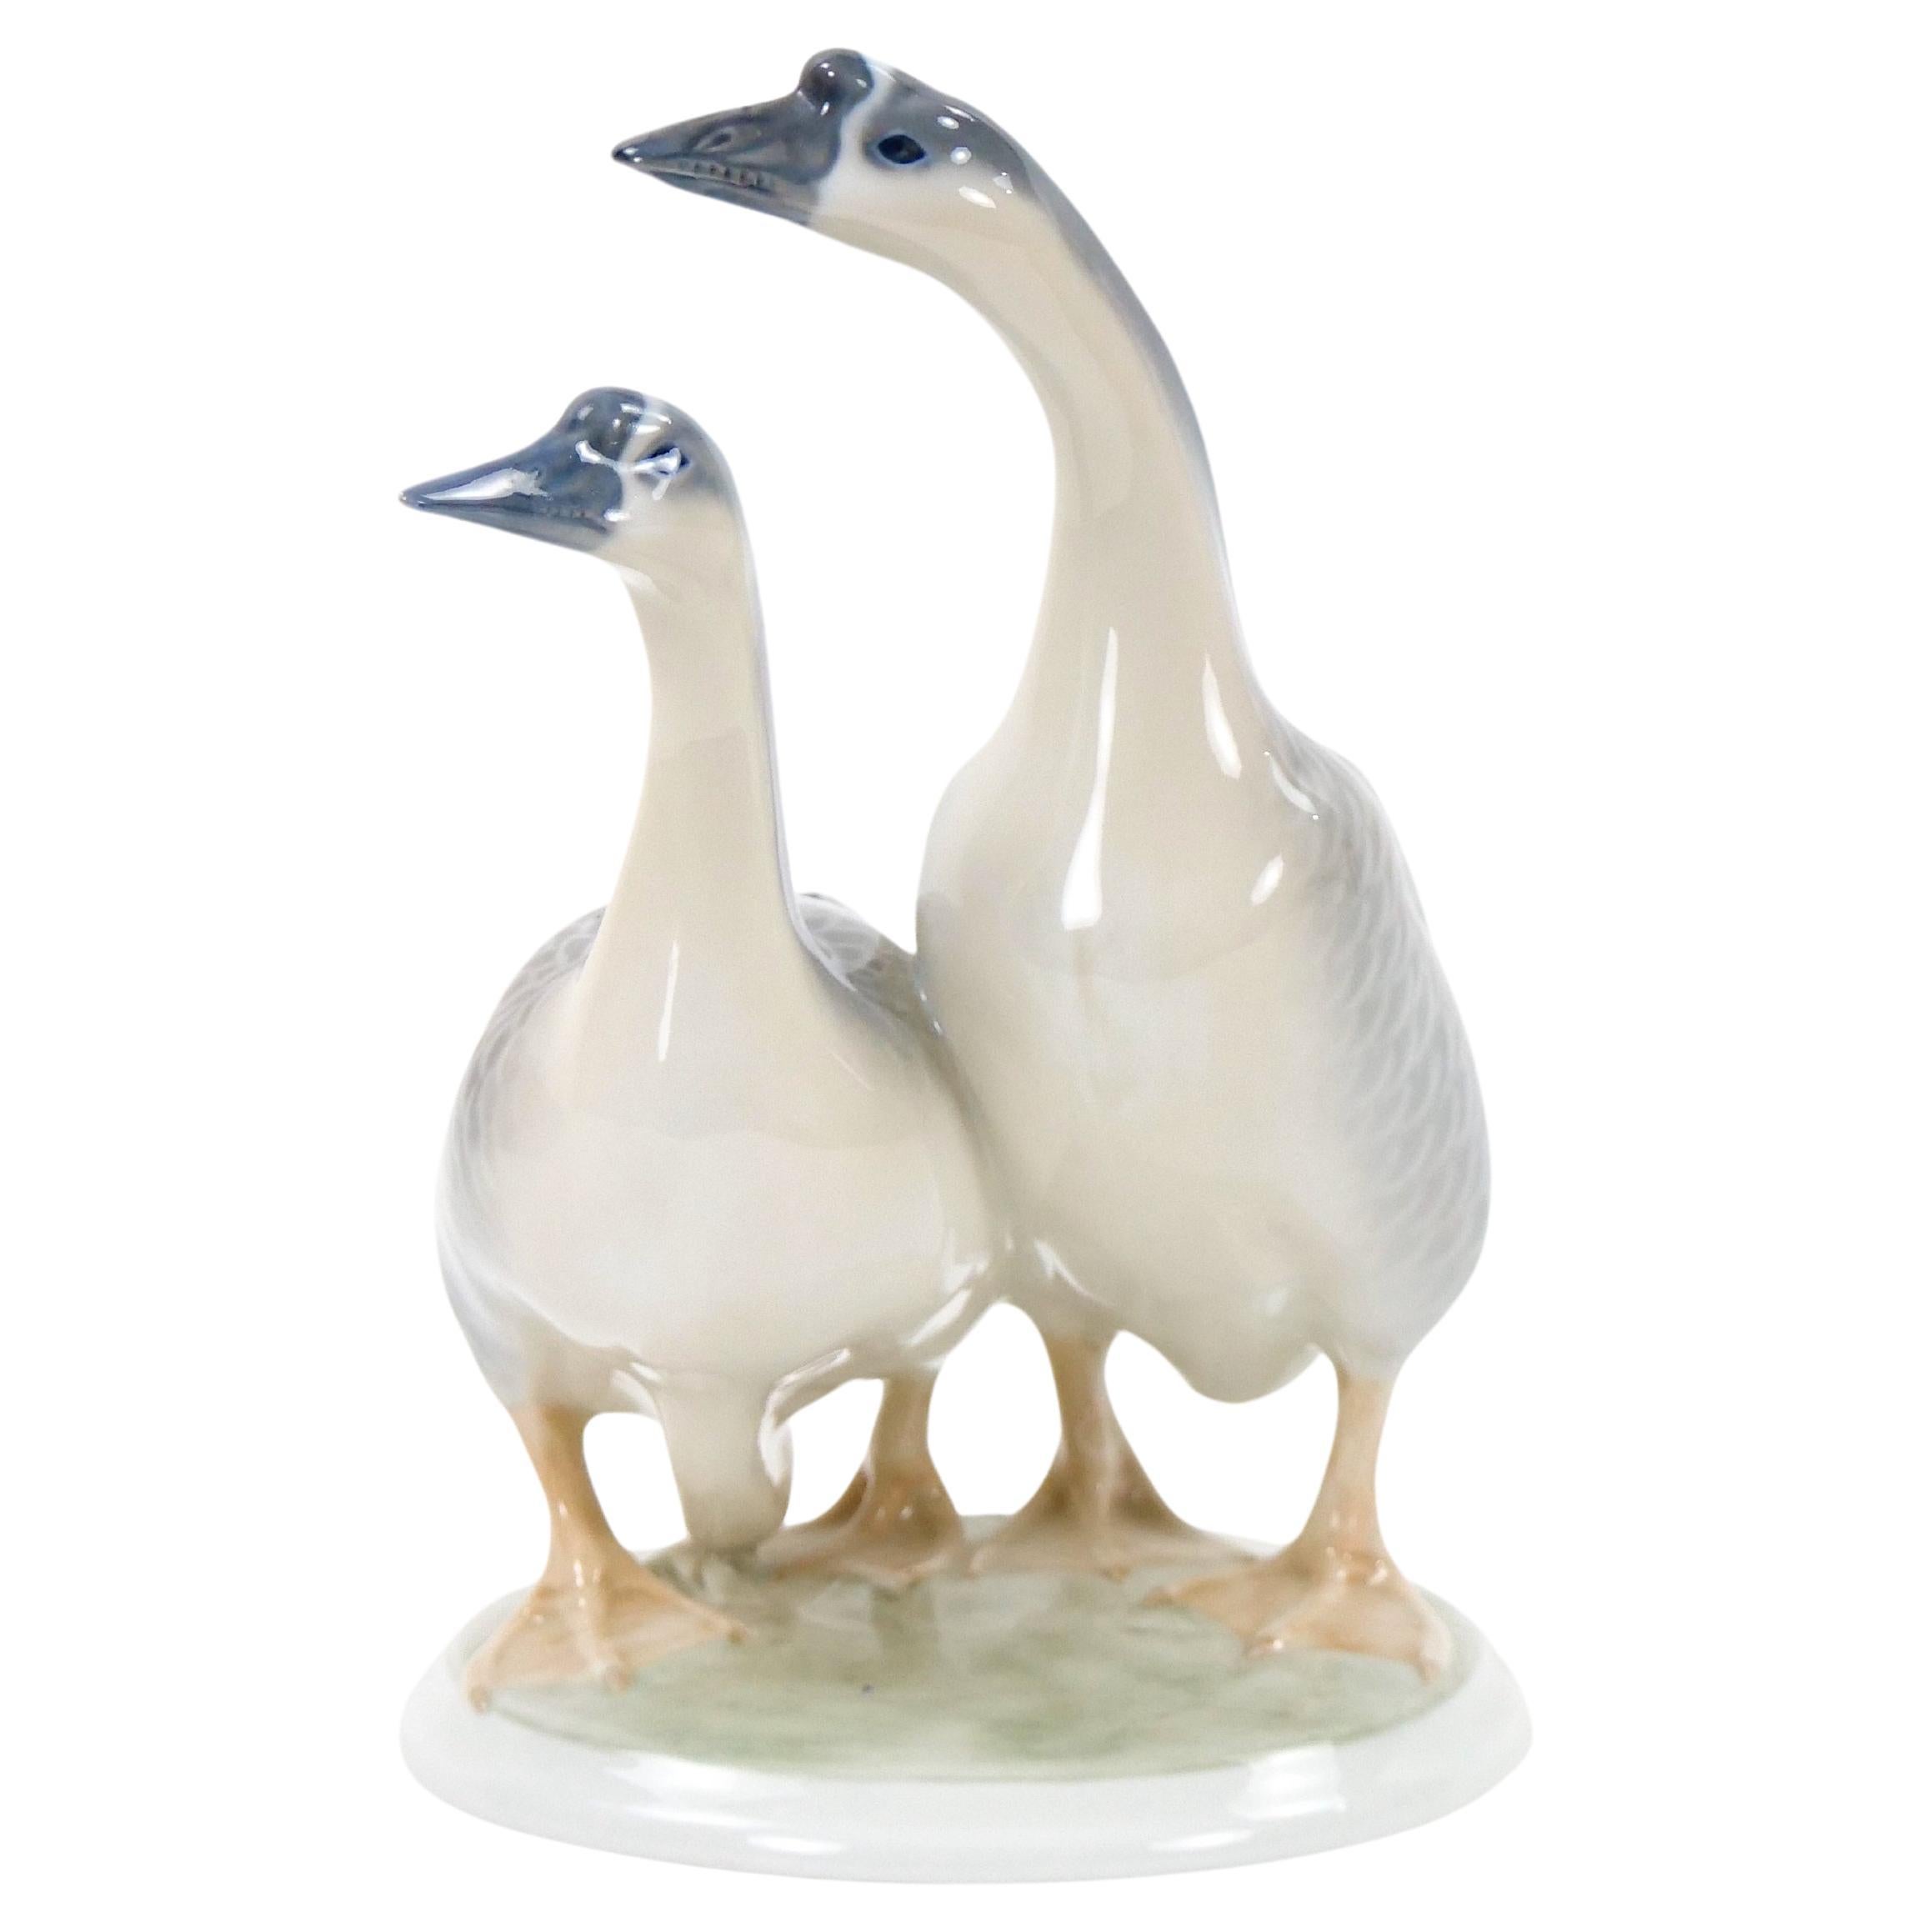 Glazed Porcelain Royal Copenhagen Decorative Pair Duck Decorative Sculpture